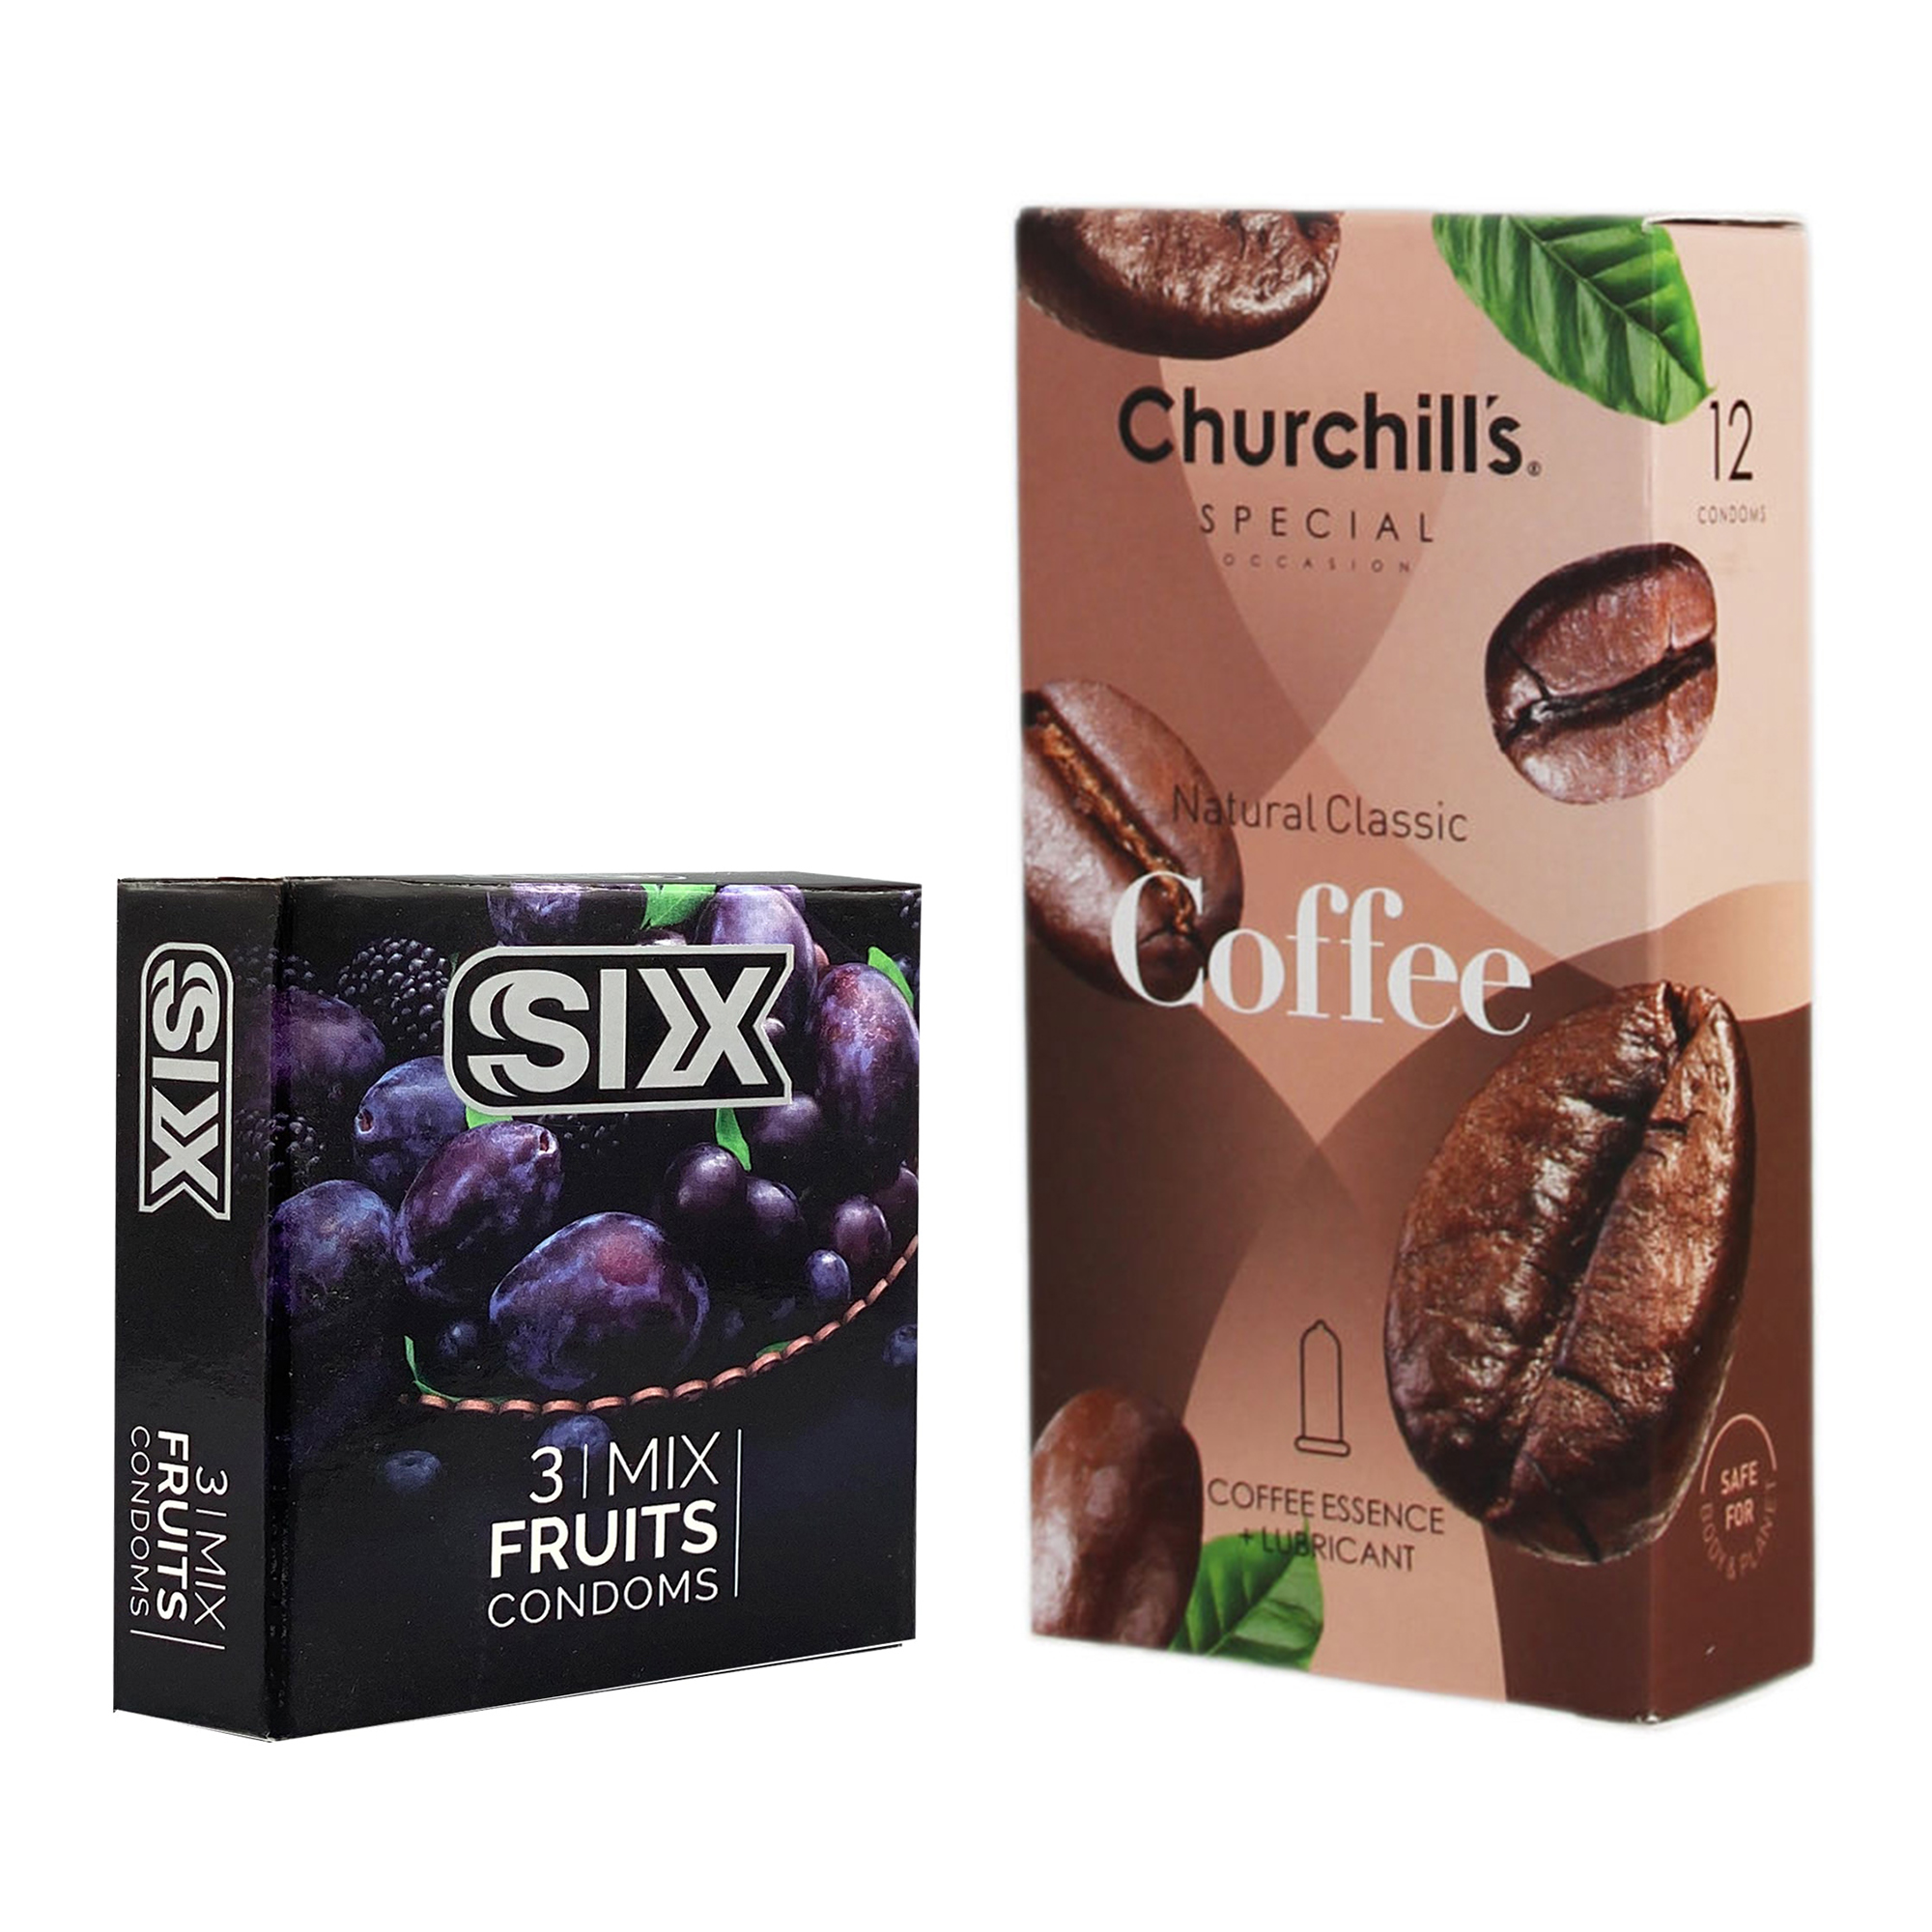 کاندوم چرچیلز مدل Coffee بسته 12 عددی به همراه کاندوم سیکس مدل میوه ای بسته 3 عددی 